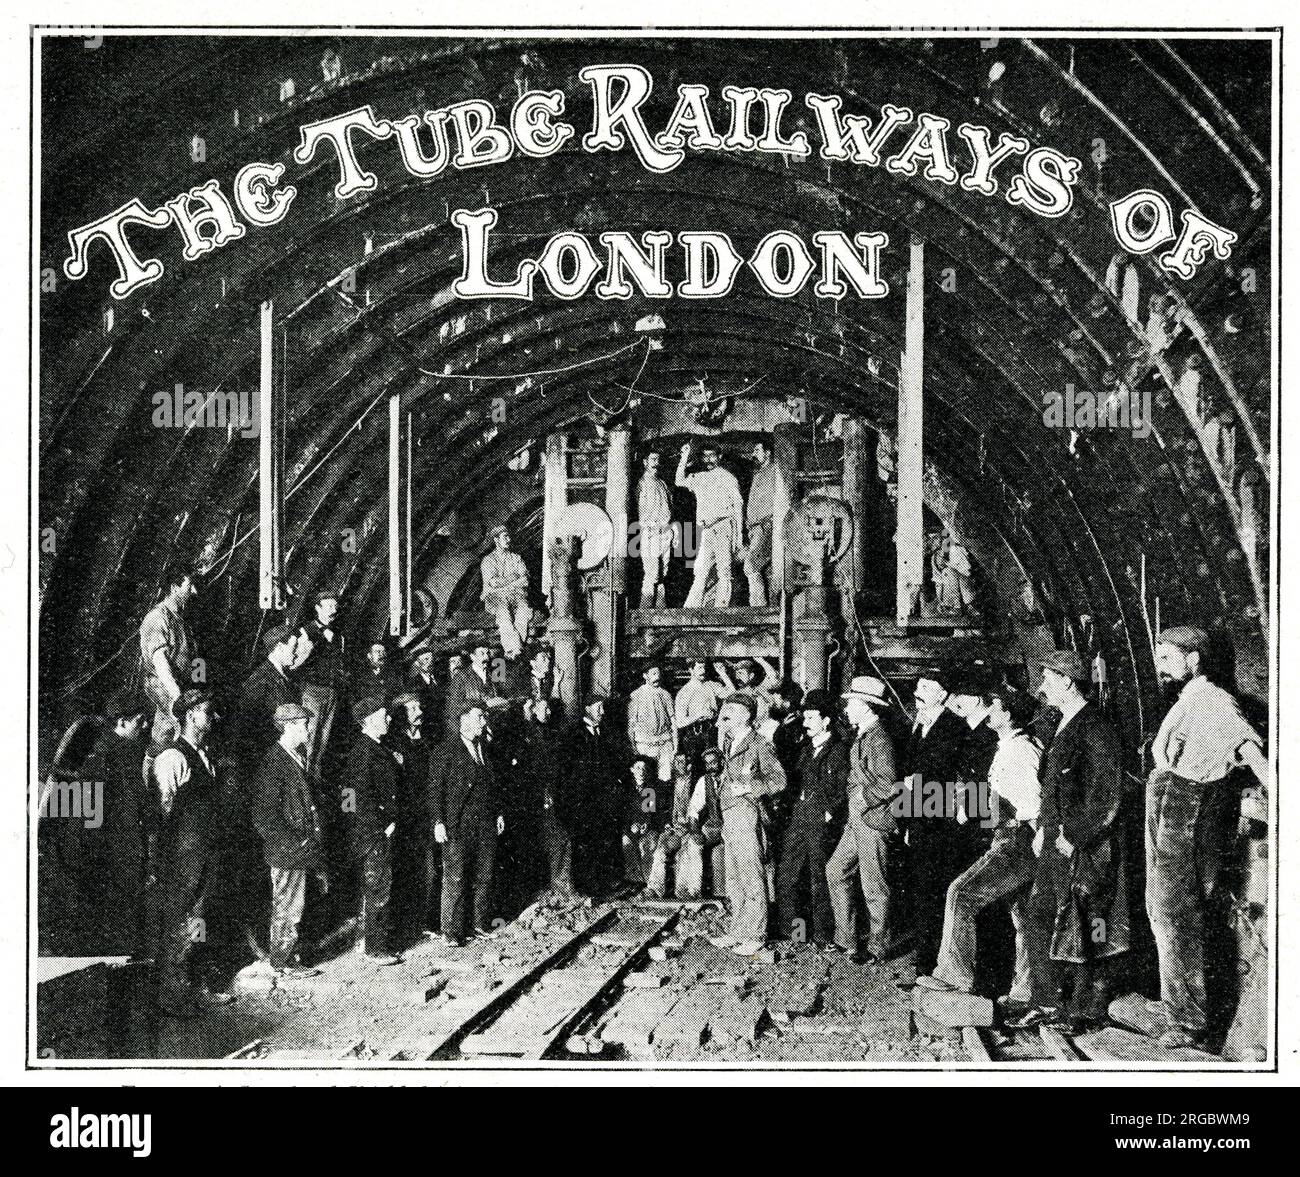 Les chemins de fer de métro de Londres - photo de groupe des ouvriers, avec le bouclier de tête d'impression conduisant un tunnel de station, les extrémités des vérins hydrauliques appuyant sur la bride de l'anneau le plus éloigné Banque D'Images